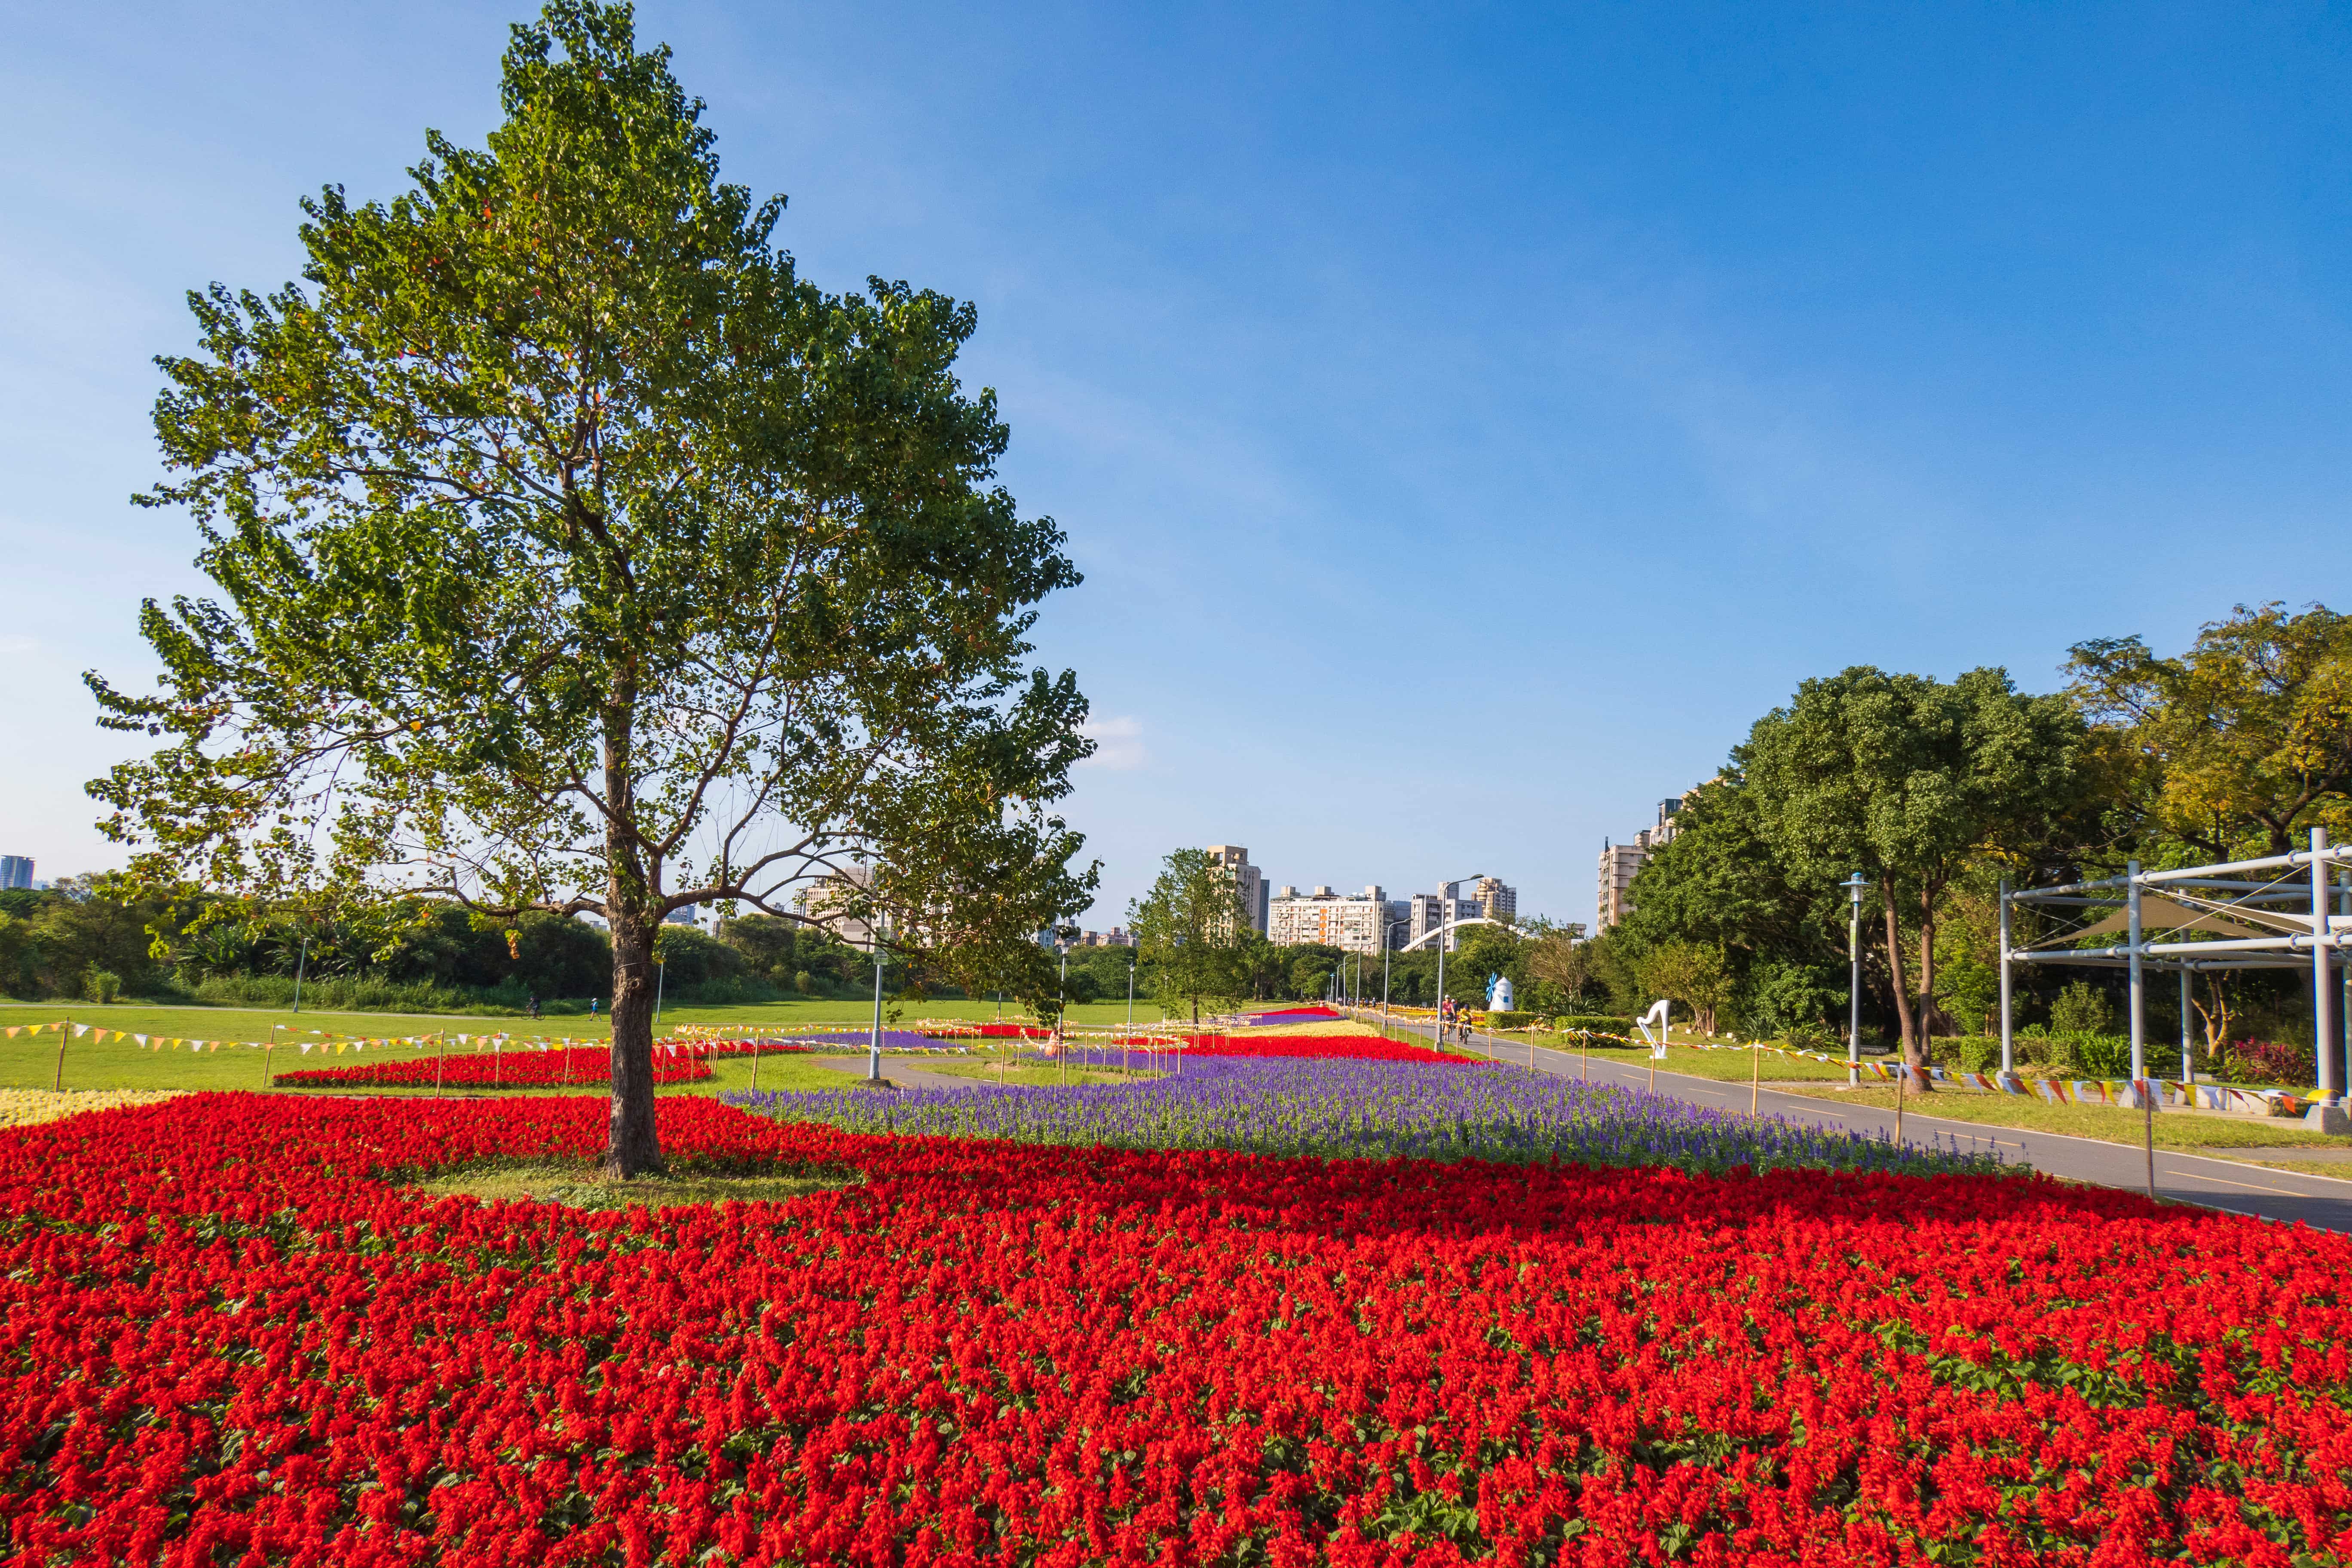 古亭河濱公園，現在正值花海盛開，大片的紅、白、紫當季草花，鮮豔奪目超夢幻